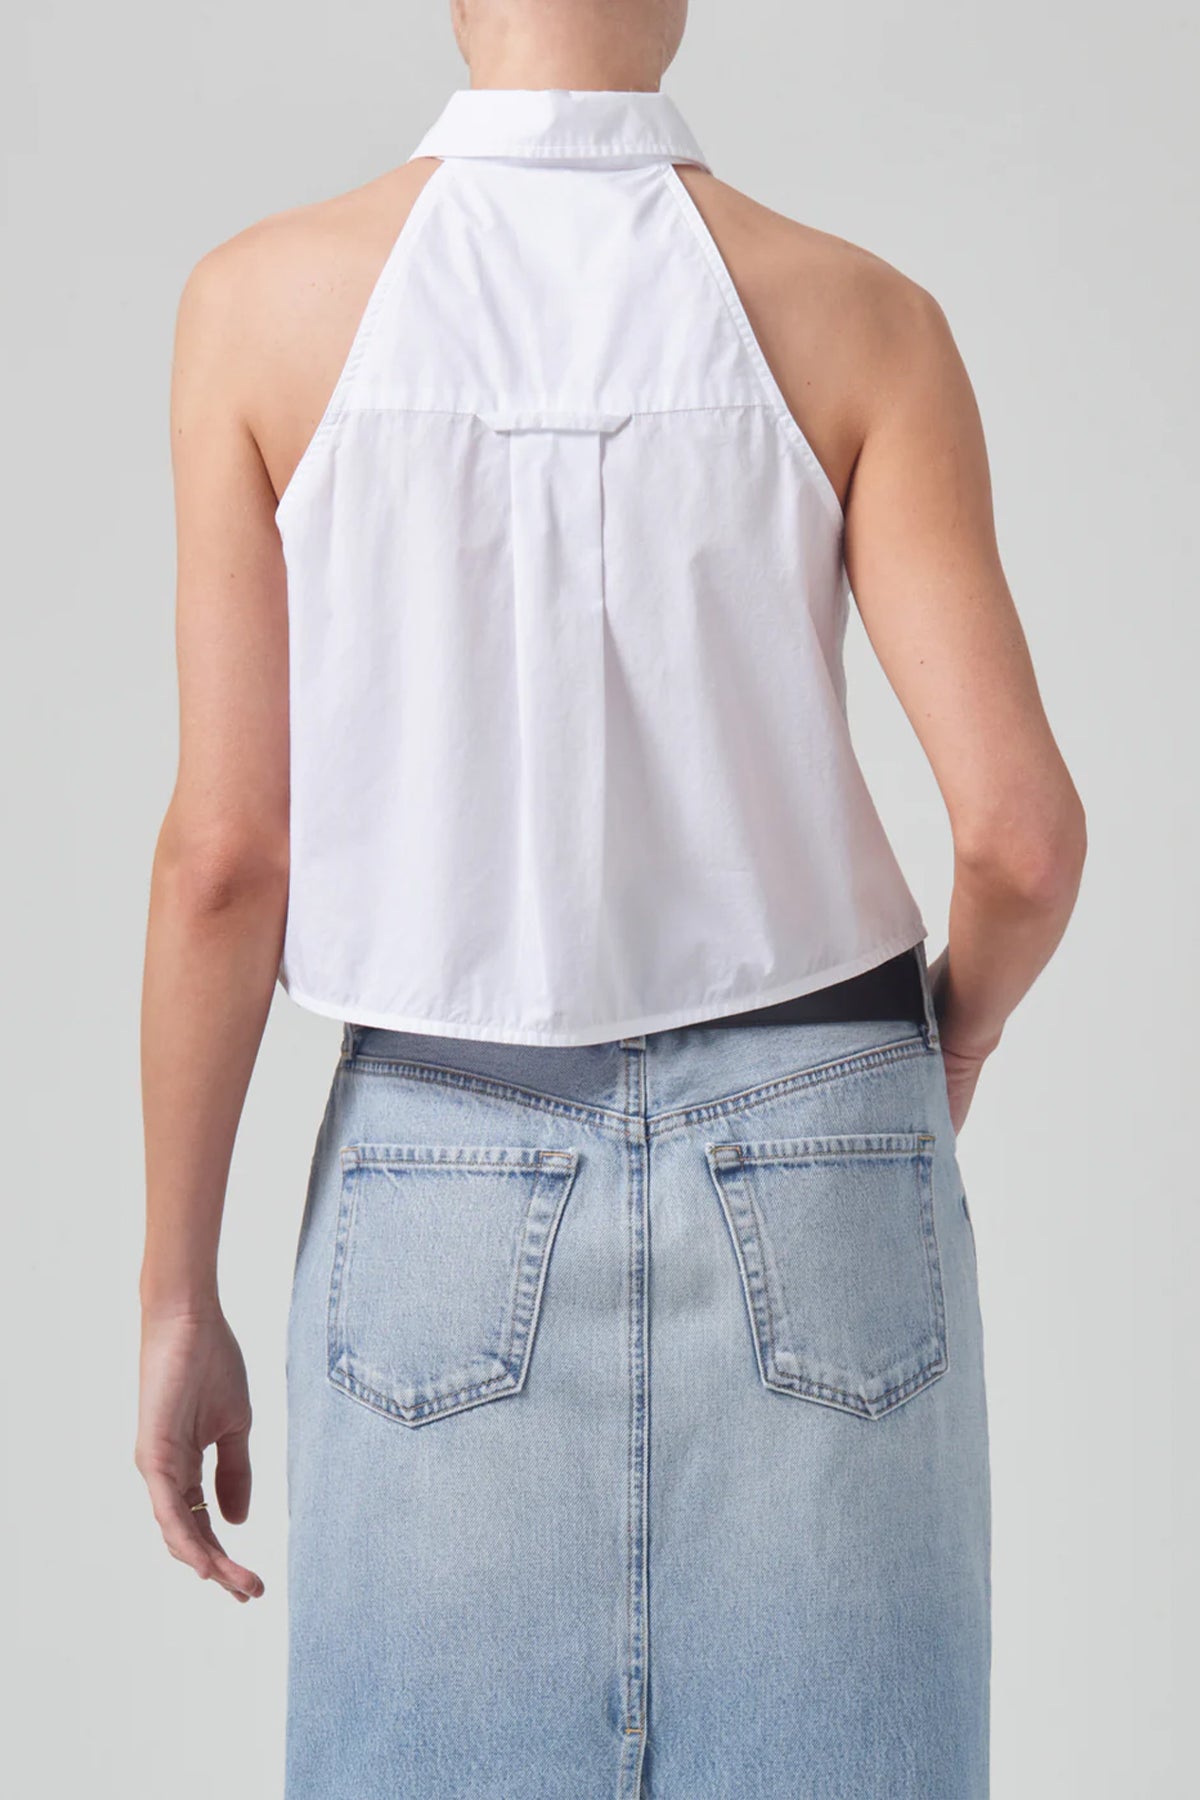 Adeline Sleeveless Shirt in Optic White - shop-olivia.com